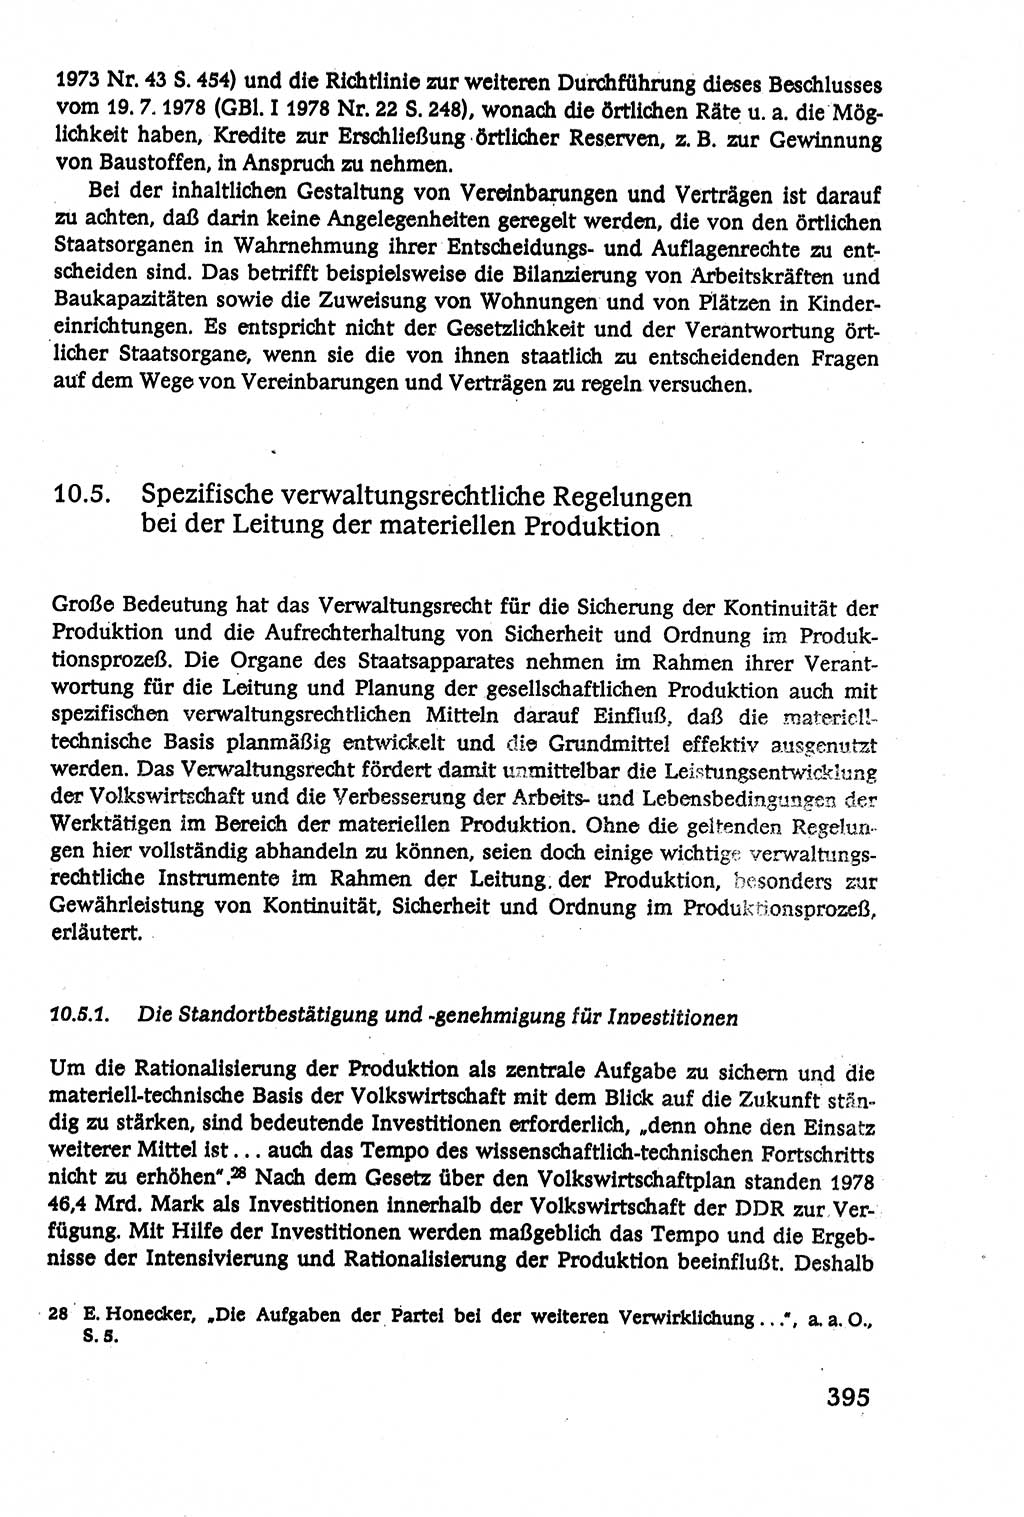 Verwaltungsrecht [Deutsche Demokratische Republik (DDR)], Lehrbuch 1979, Seite 395 (Verw.-R. DDR Lb. 1979, S. 395)